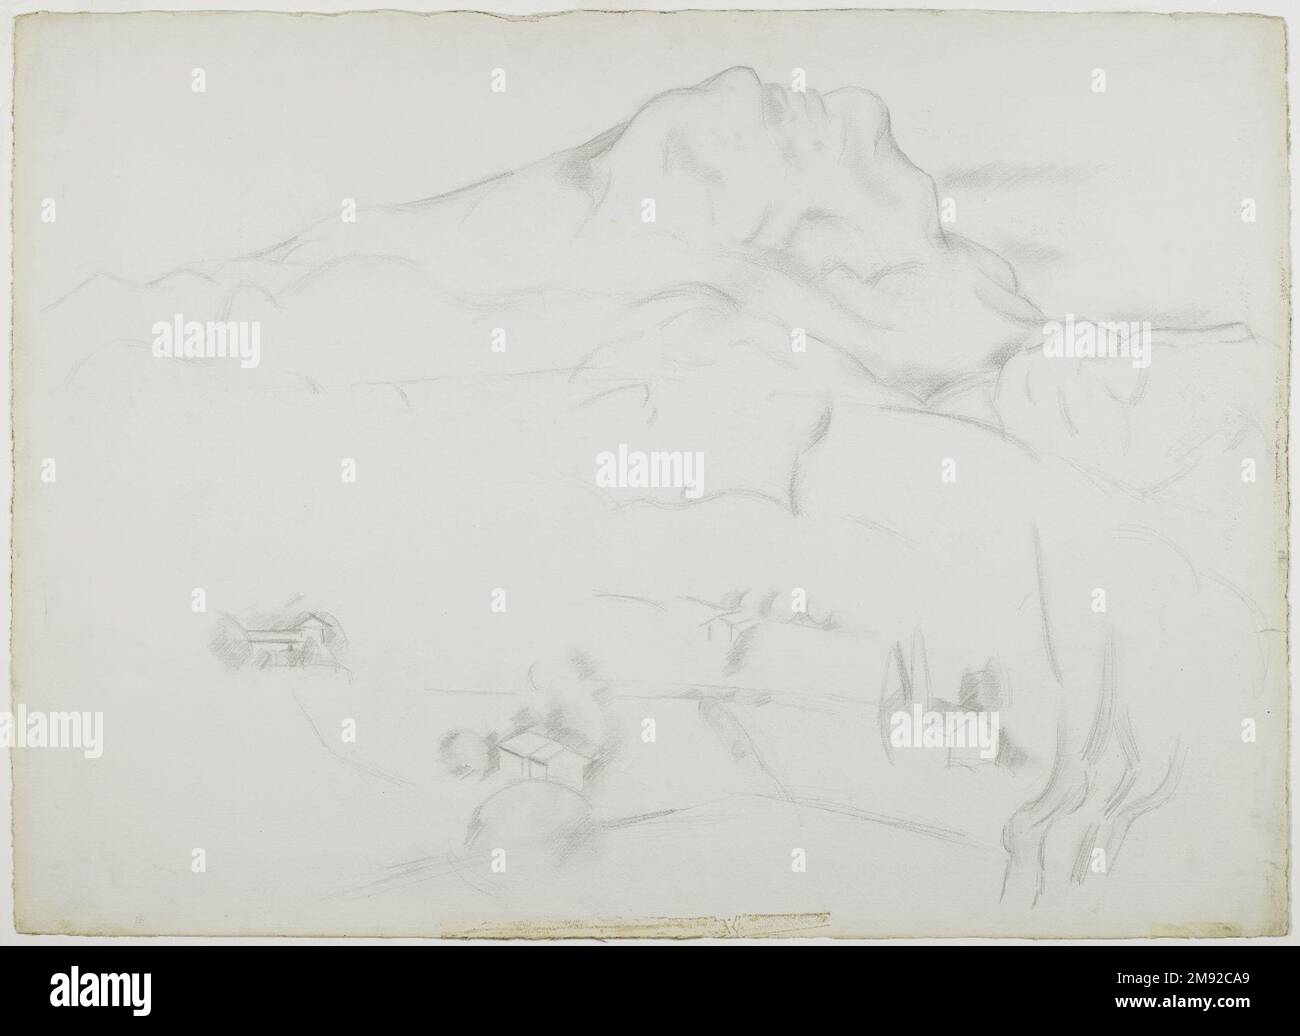 Mont Sainte-Victoire Marsden Hartley (americano, 1877-1943). Mont Sainte-Victoire, 1926-1927. Grafite su carta spessa, ruvida, color crema, foglio: 22 5/8 x 31 3/16 poll. (57,5 x 79,2 cm). In omaggio a Paul Cézanne, il modernista Marsden Hartley trascorse un periodo vivendo e lavorando nel paesaggio preferito dell’artista francese, Aix-en-Provence, nel sud della Francia. Come Cézanne aveva fatto, Hartley ha raffigurato ripetutamente il profilo distintivo del Mont Sainte-Victoire. In questo disegno di ricambio, catturò la monumentalità e i contorni scultorei della montagna usando un piatto Foto Stock